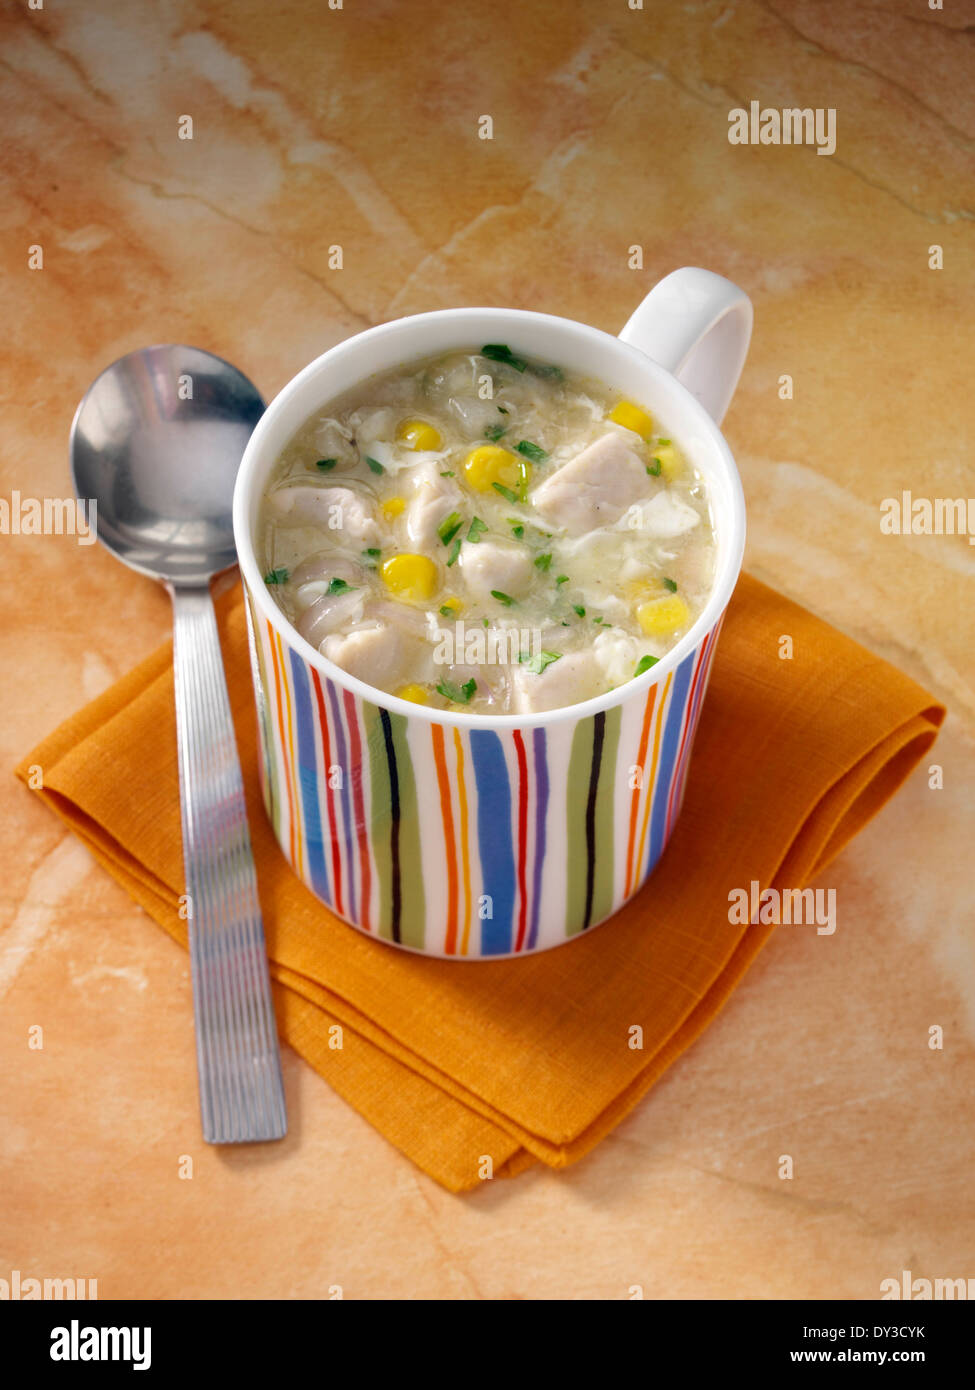 Ein Becher Huhn Mais Suppe Schüler Essen Stockfotografie - Alamy